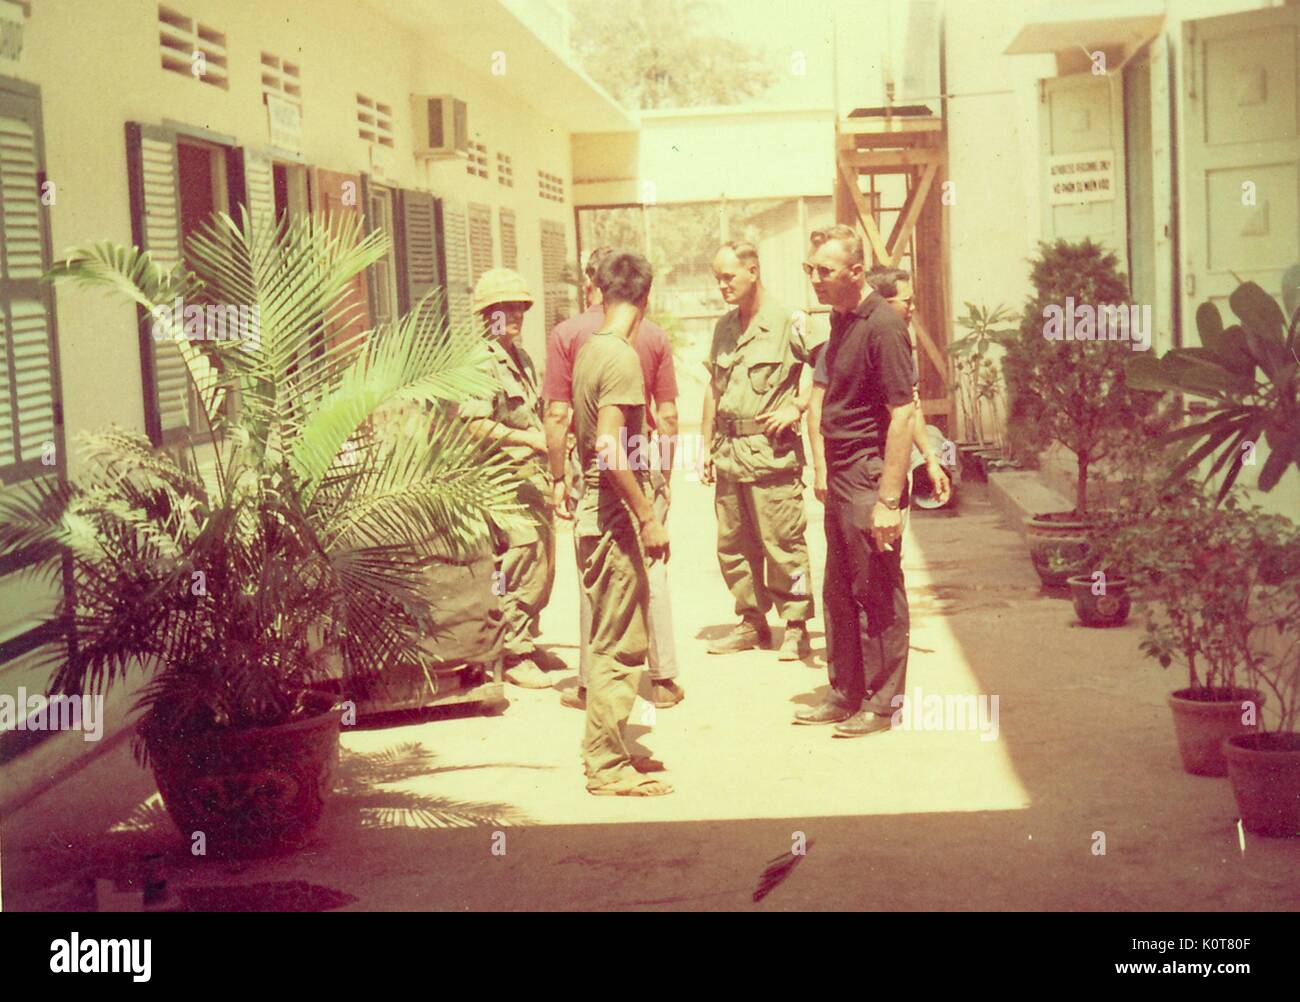 Ein Foto von einer Gruppe von Menschen sprechen miteinander, zwei der Männer sind gekleidet in United States Army Combat Uniform, die anderen Männer lässig gekleidet sind, sind Sie im Innenhof zwischen zwei Gebäuden versammelt und von Topfpflanzen, Vietnam, 1968 umgeben. Stockfoto